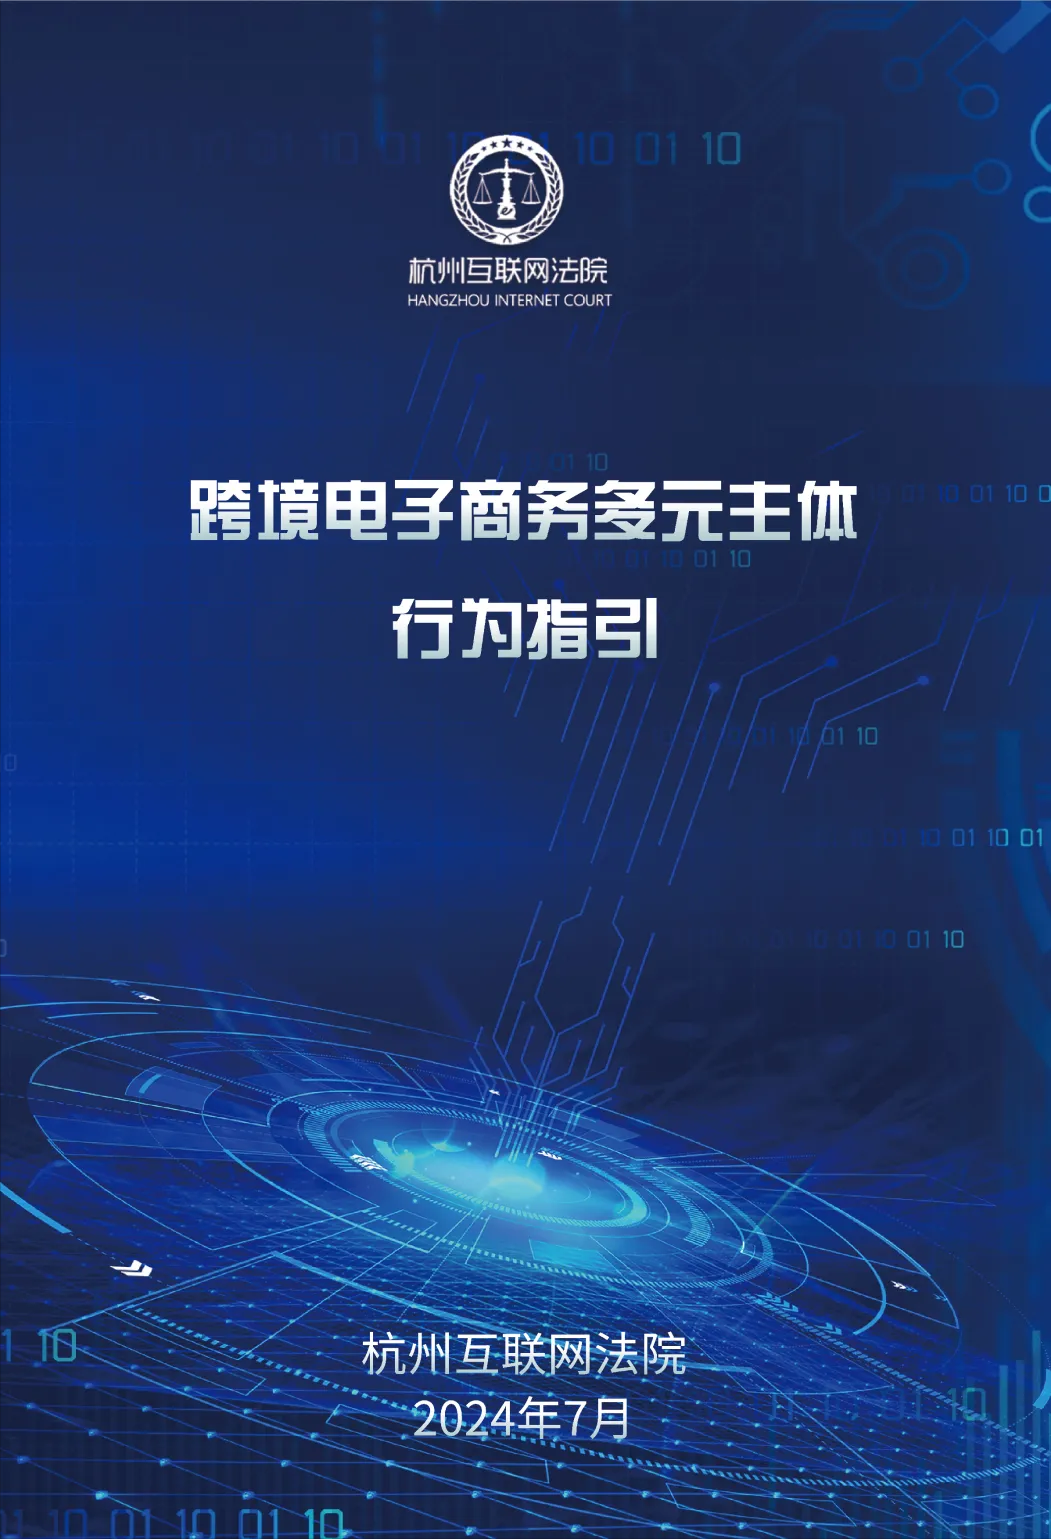 BAT365官网杭州互联网法院：《跨境电子商务消费者行为指引